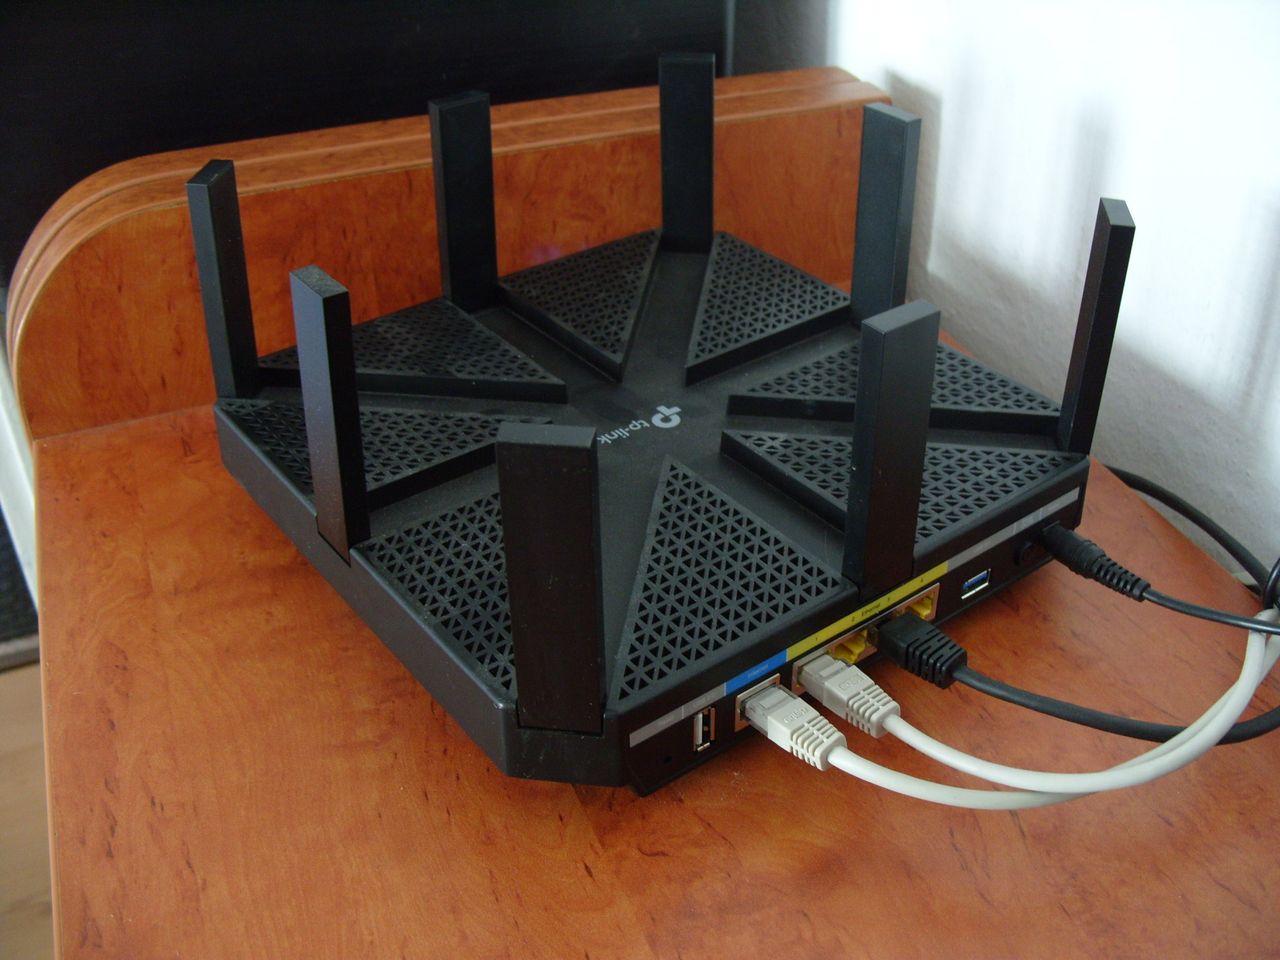 Test routera TP-Link Archer C5400